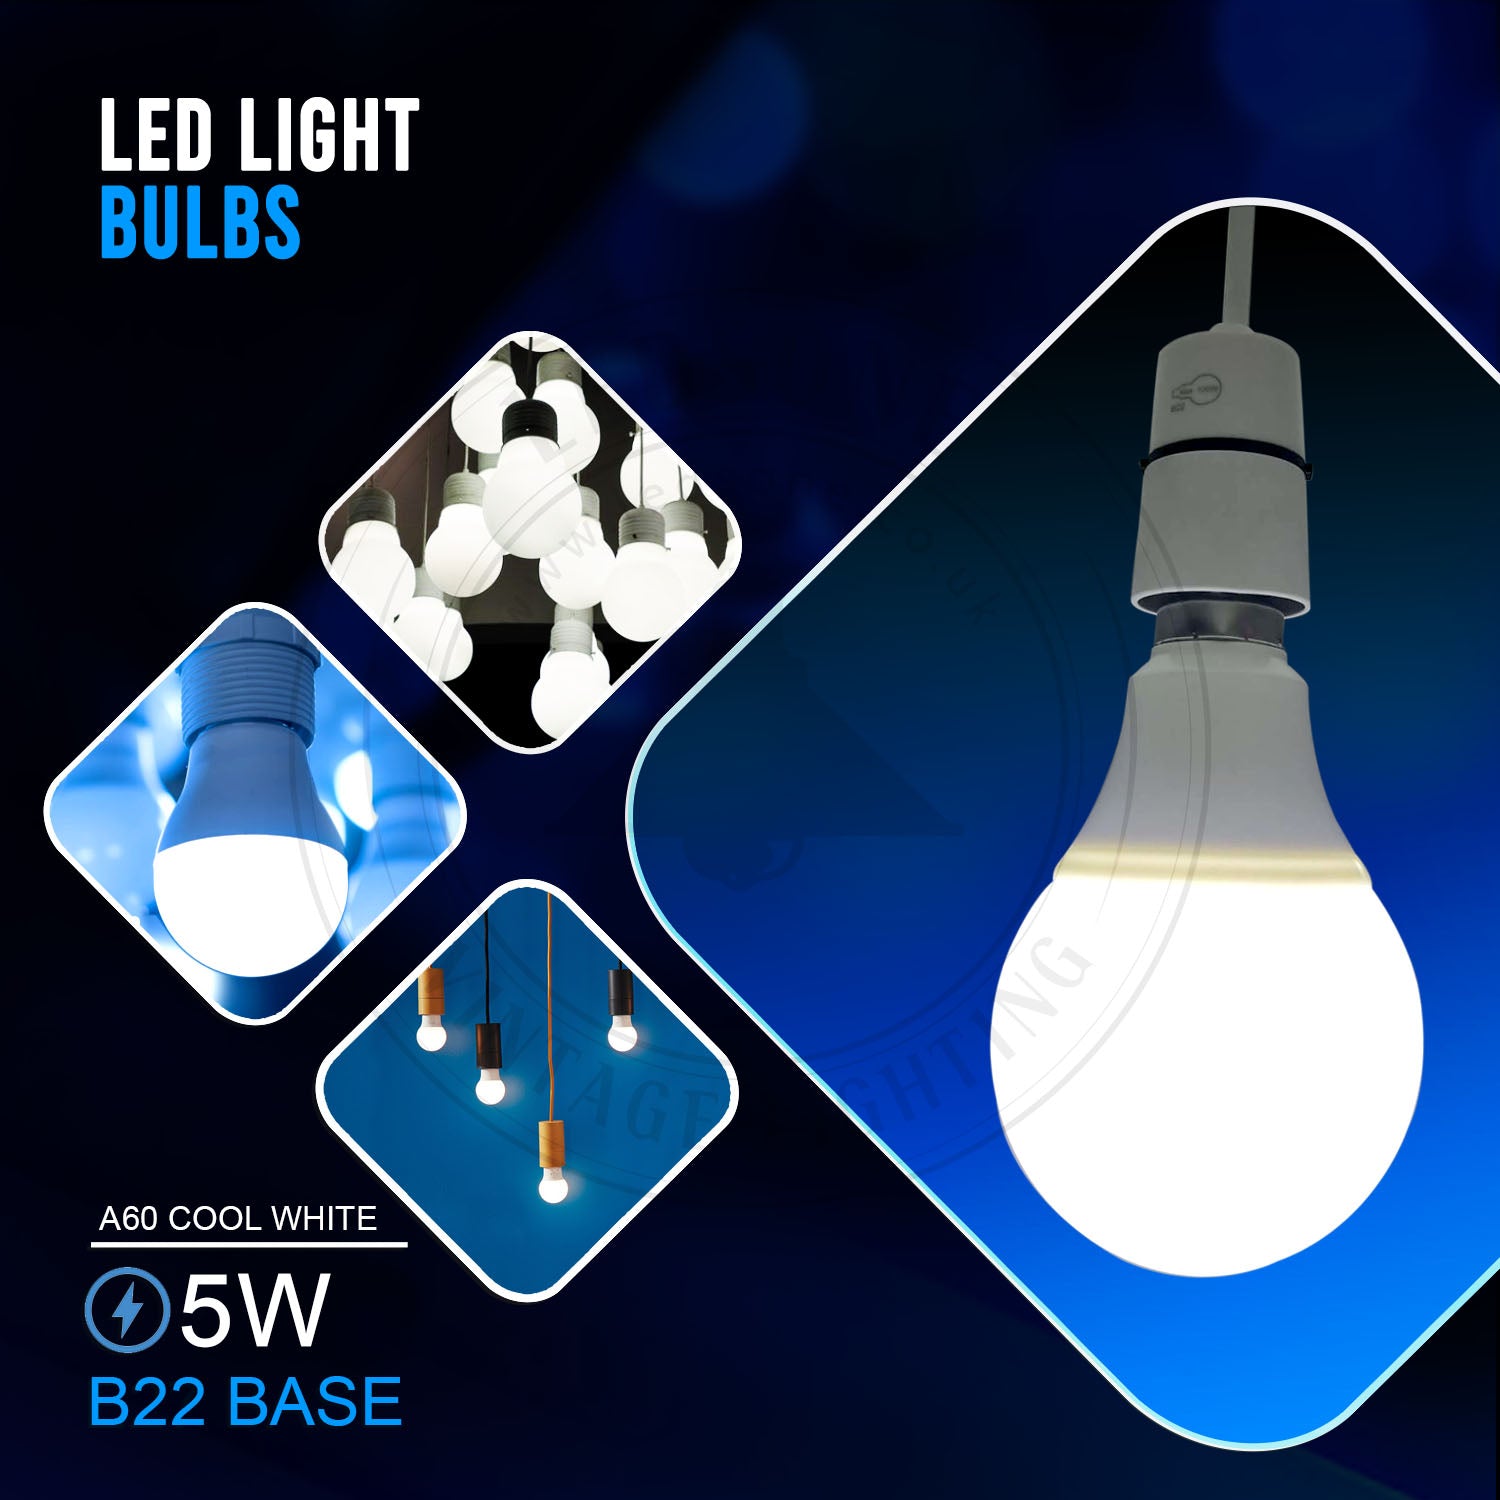 3W-25W B22 GLS Light Bulbs